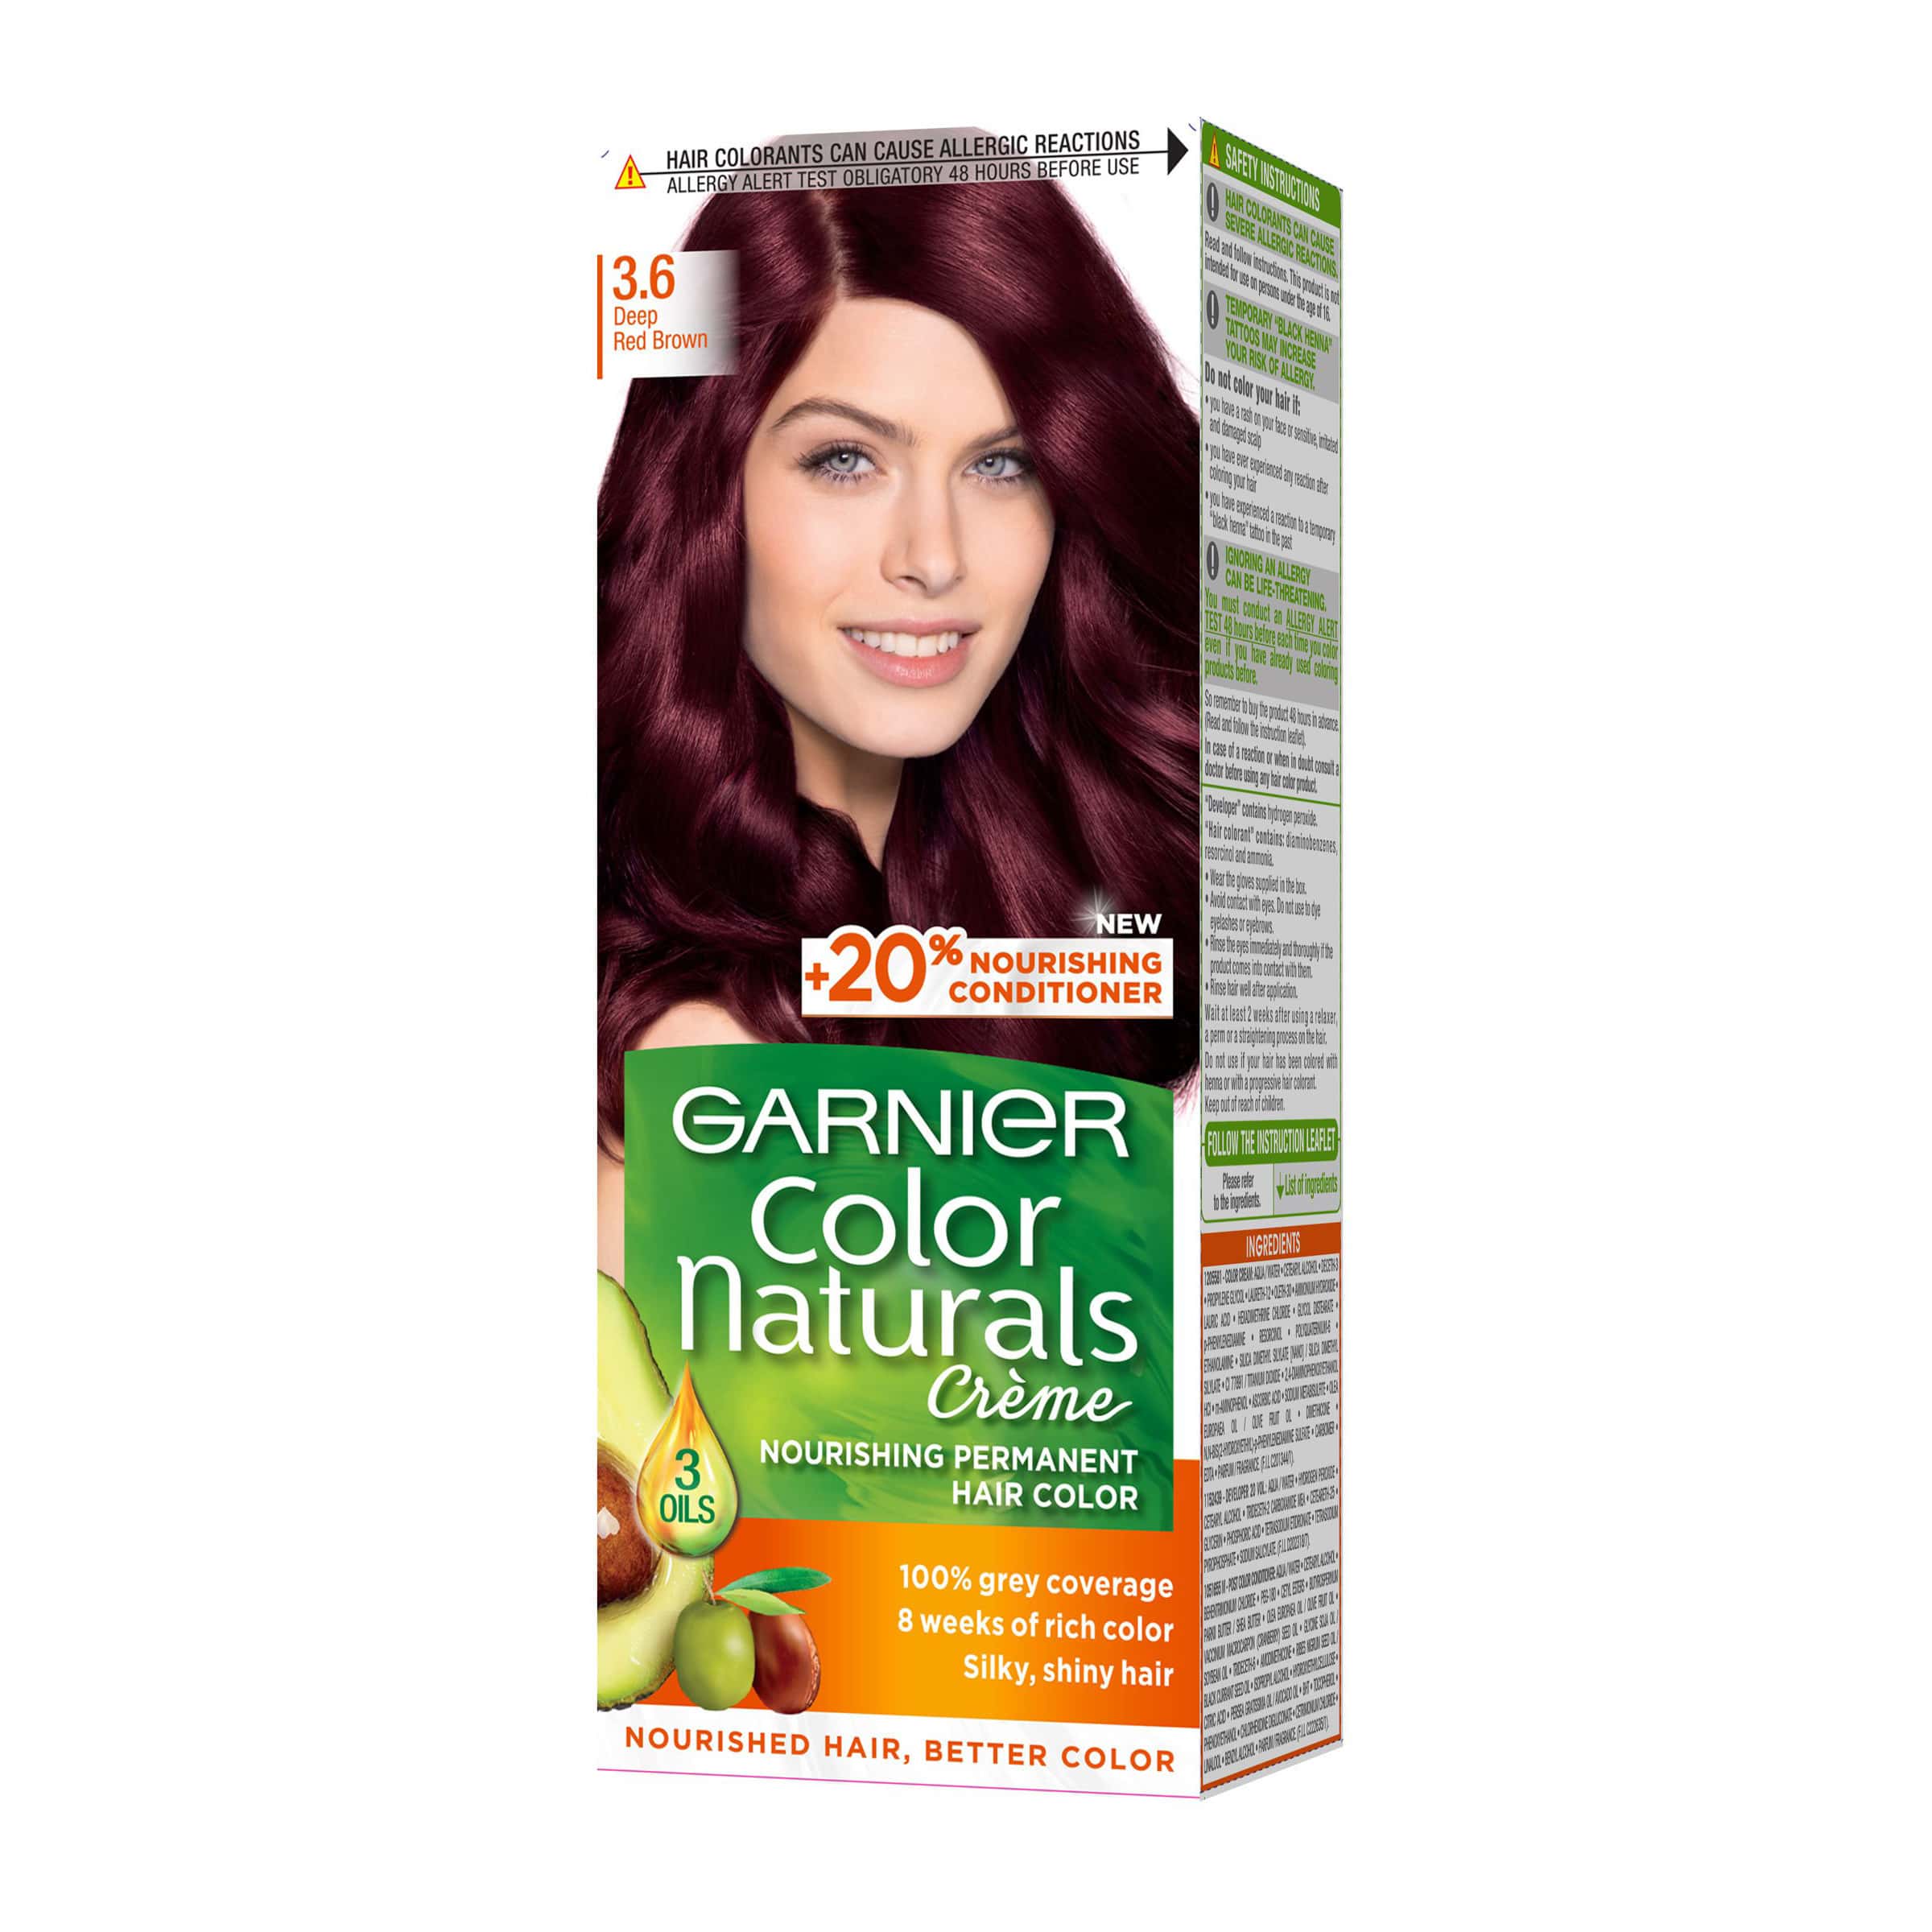 Гарньер 5.25. Гарньер 5 1/2. Garnier Color naturals 6.3. 3.61 Стойкая крем-краска для волос "Color naturals". Garnier Mahagony Colours.